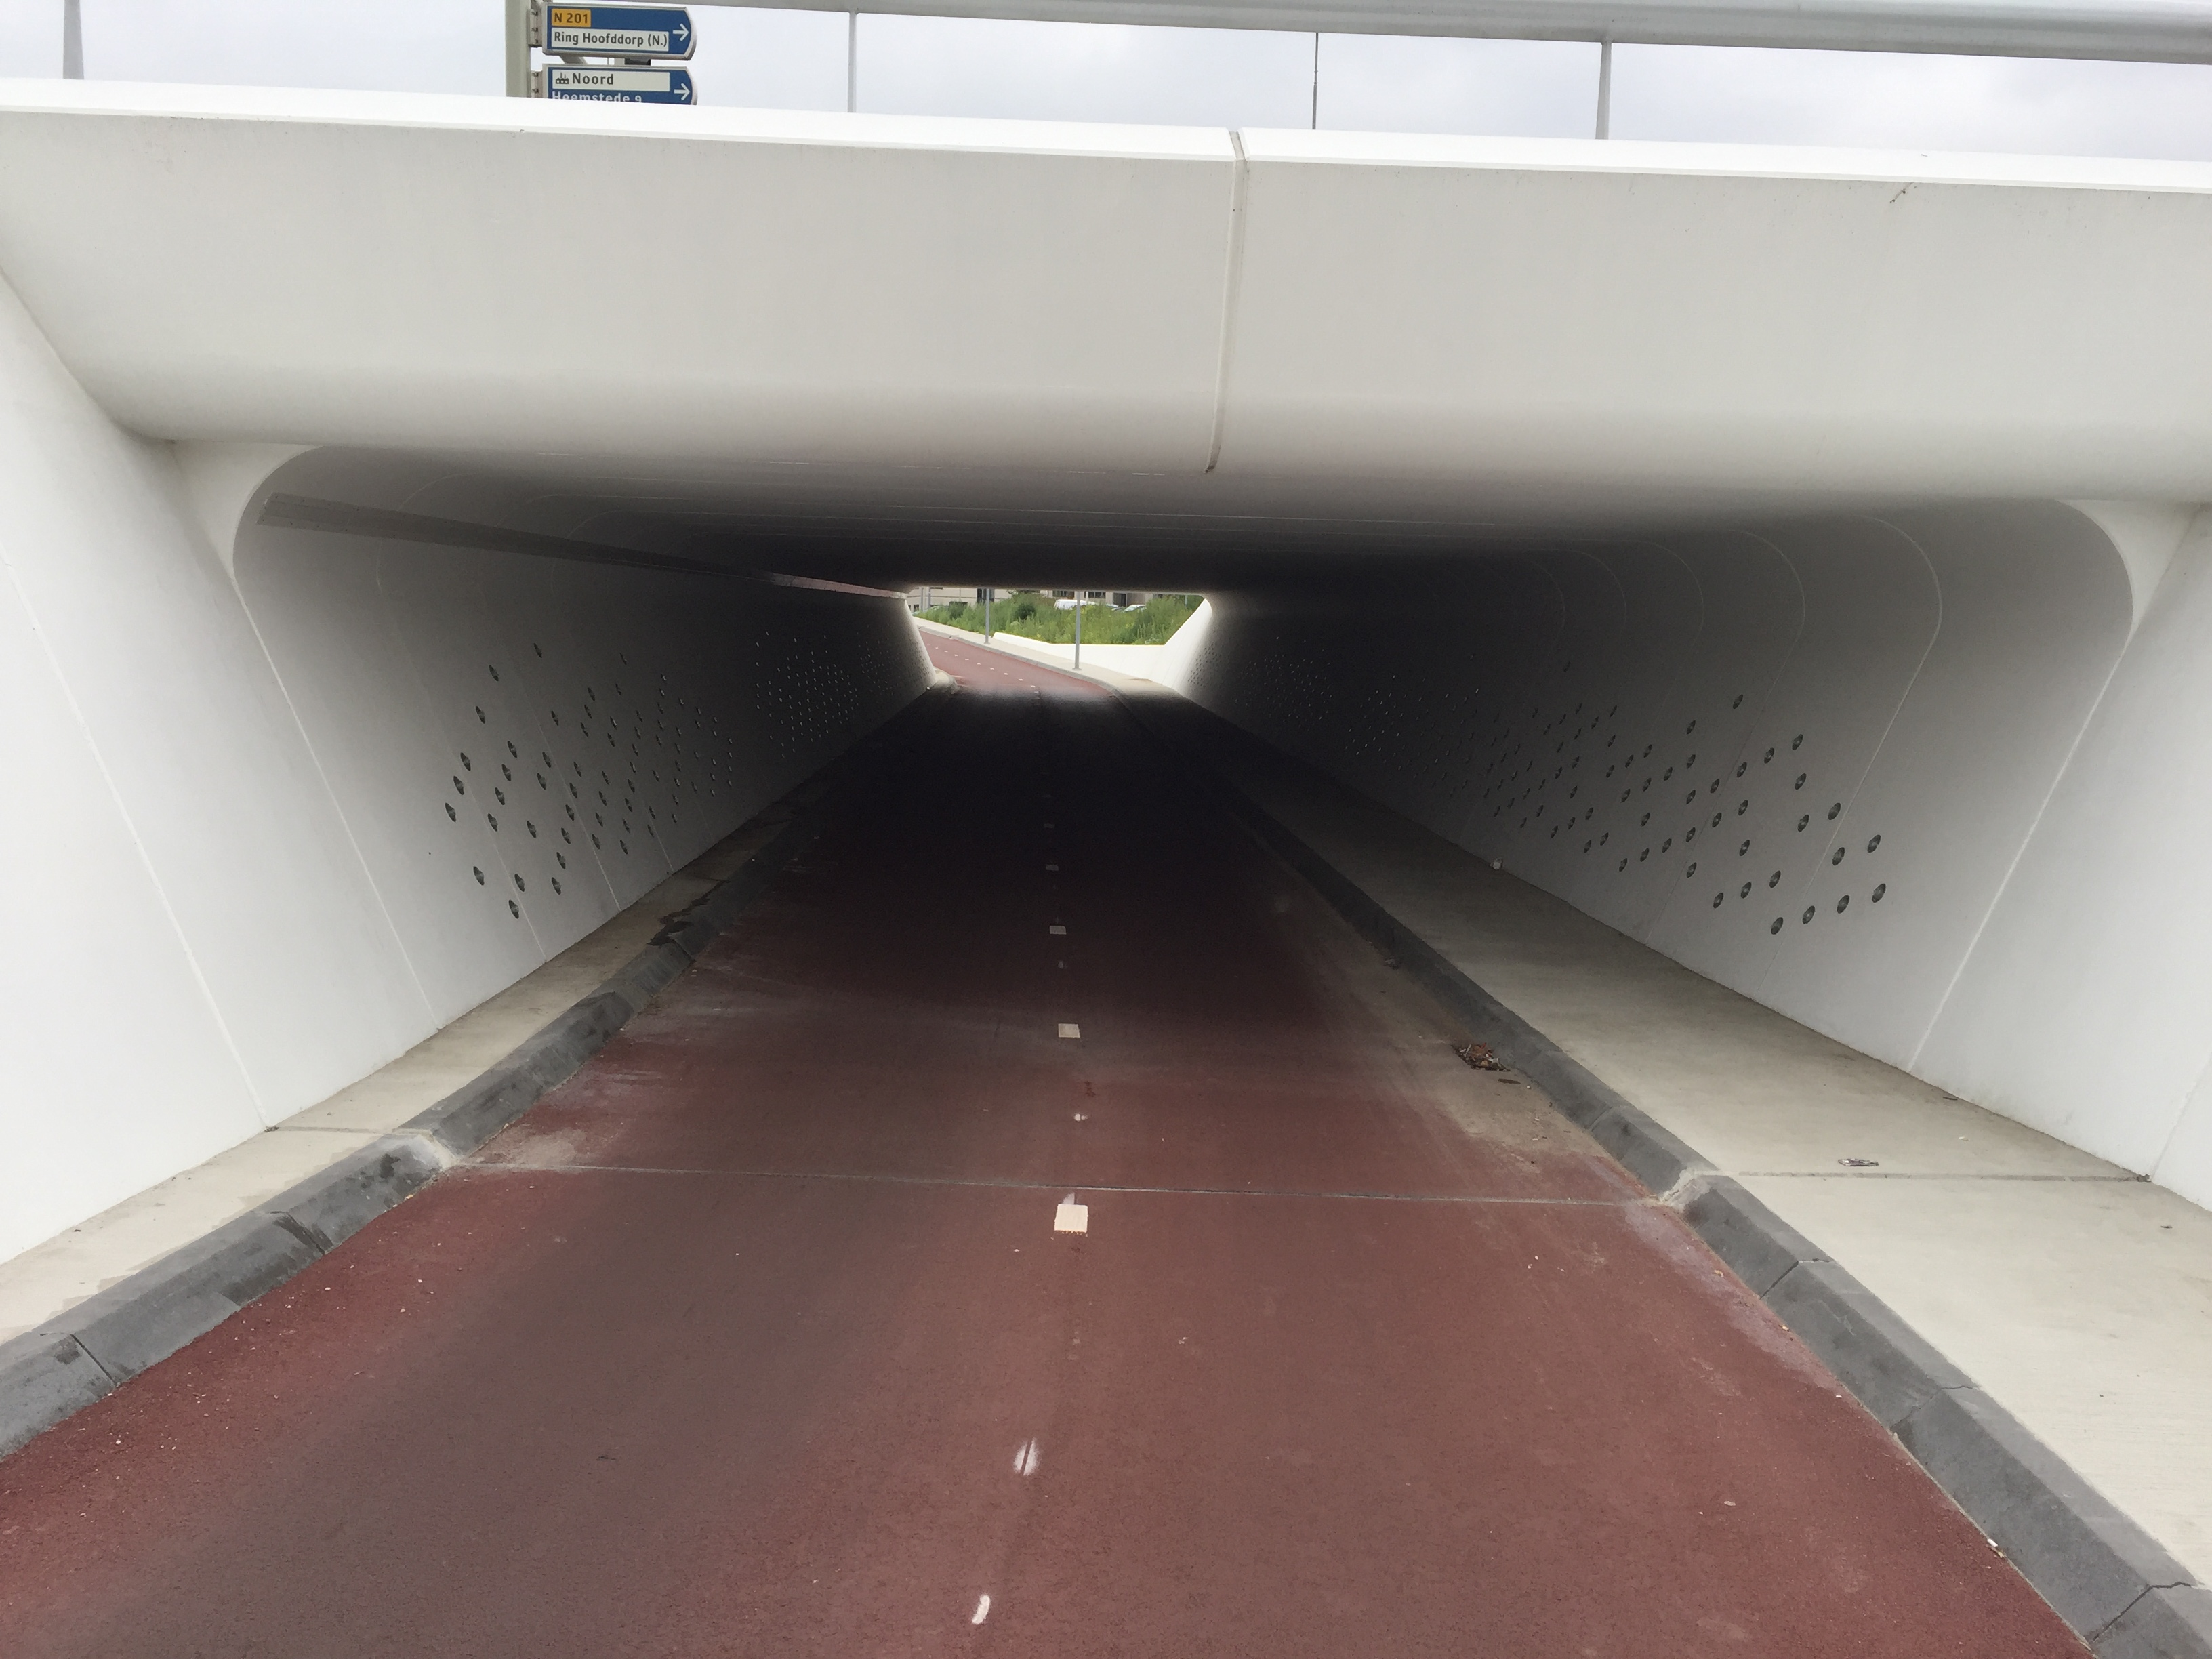 Rxlight heeft voor de gemeente Haarlemmermeer 2 tunnels mogen verlichten onder de provinciale weg N201. We hebben de tunnel verlicht door middel van een doorlopende lichtlijn. De led lijn is speciaal ontworpen voor deze tunnel. Het is voorzien van een RVS behuizing en heeft een opalen afscherming in RAL kleur. Daarmee heeft de tunnel een mooie gelijkmatigheid. Rxlight heeft dit in opdracht van BAM infra en op advies van de gemeente Haarlemmermeer gedaan.